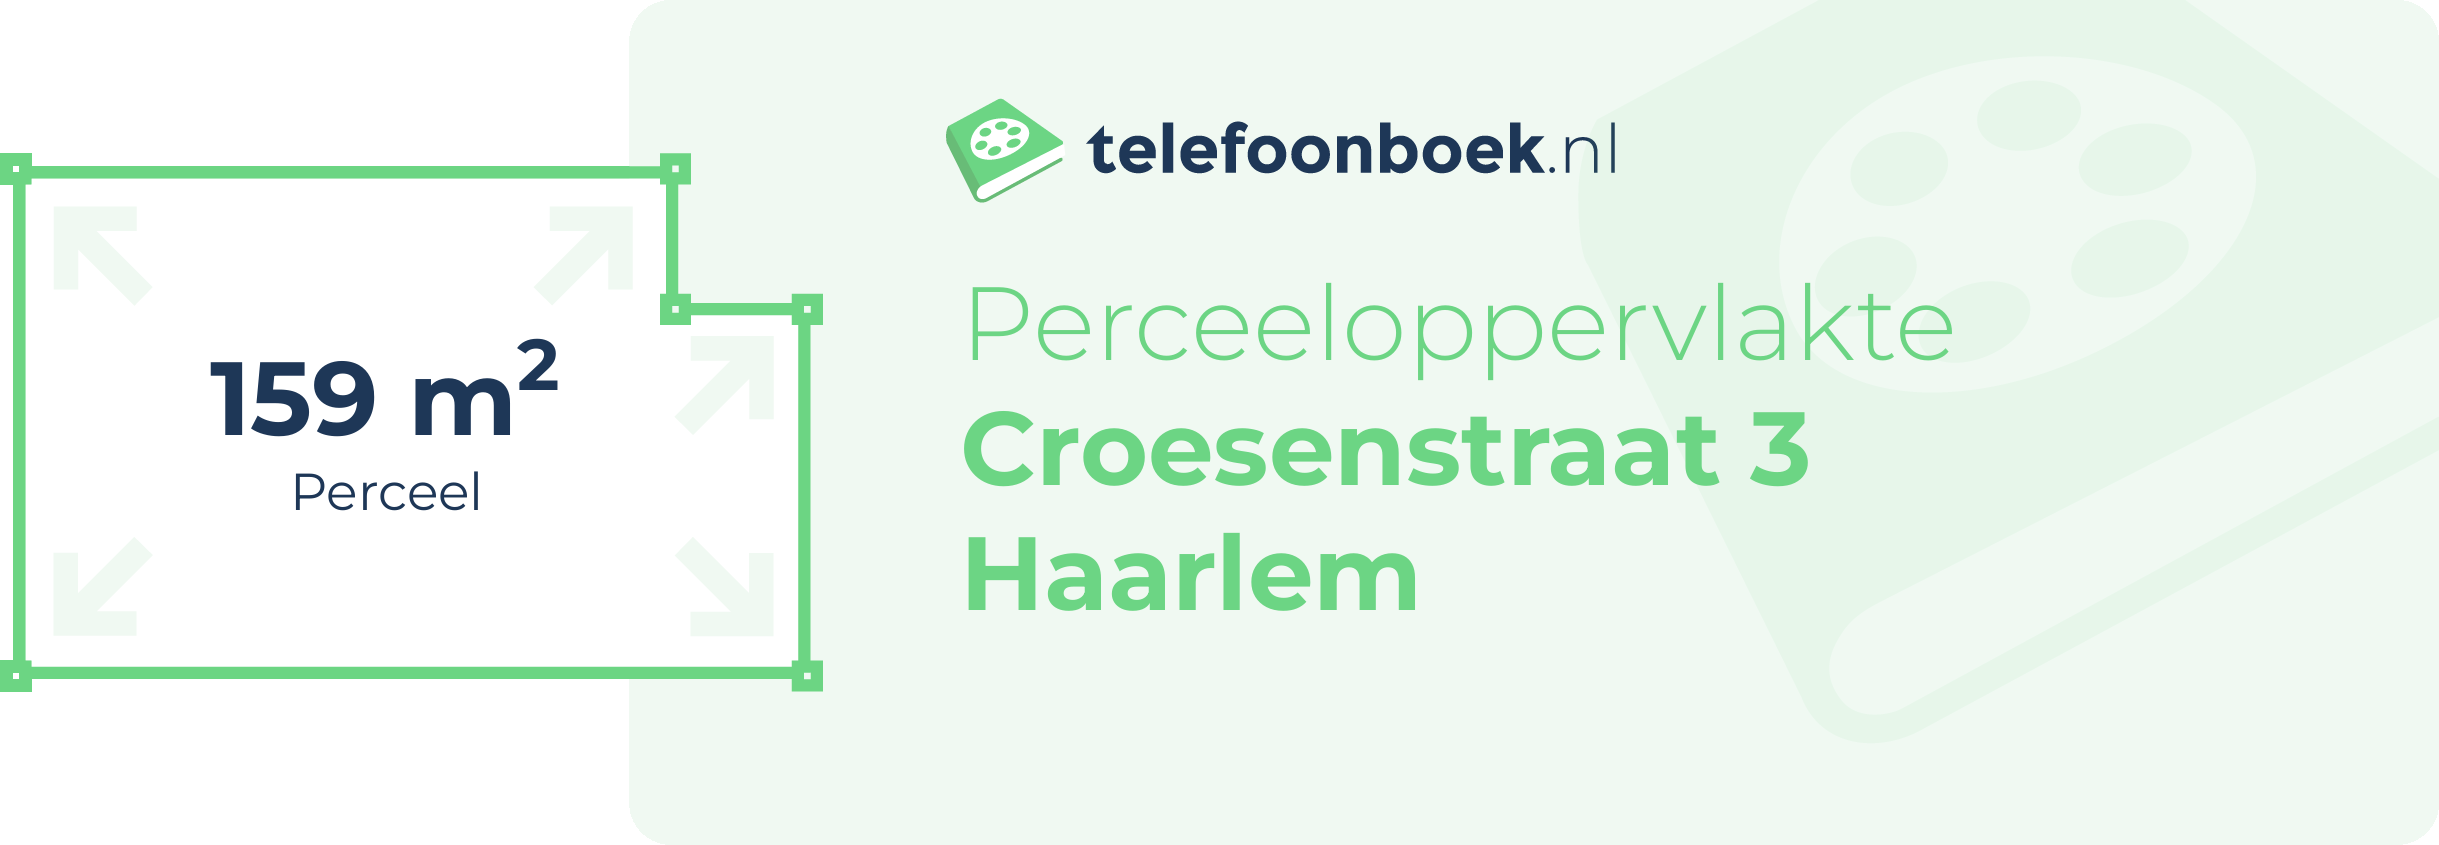 Perceeloppervlakte Croesenstraat 3 Haarlem